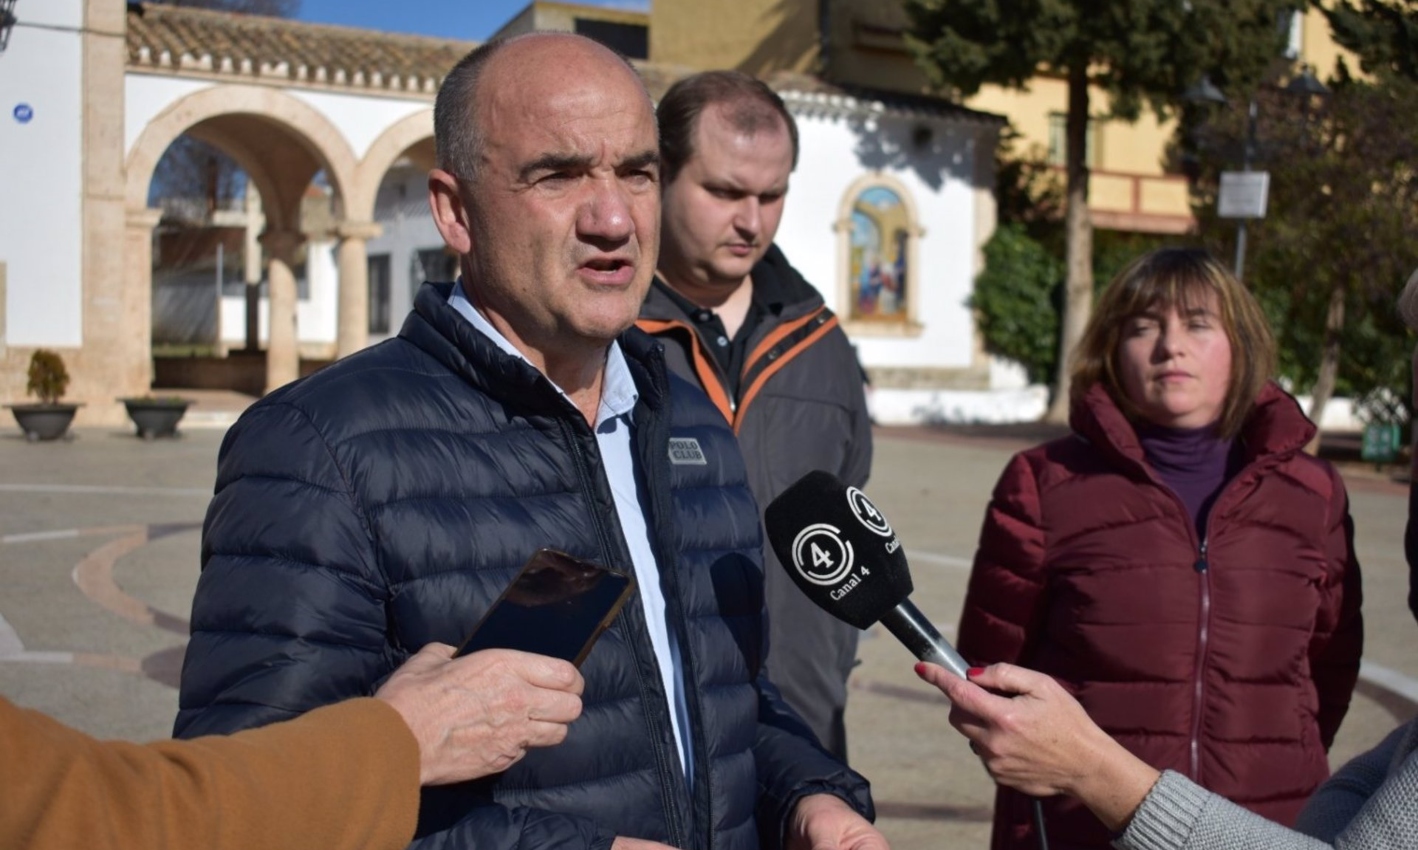 El alcalde de Villarrobledo (Albacete), Valentín Bueno, presenta la carrera solidaria a favor del pueblo ucraniano.